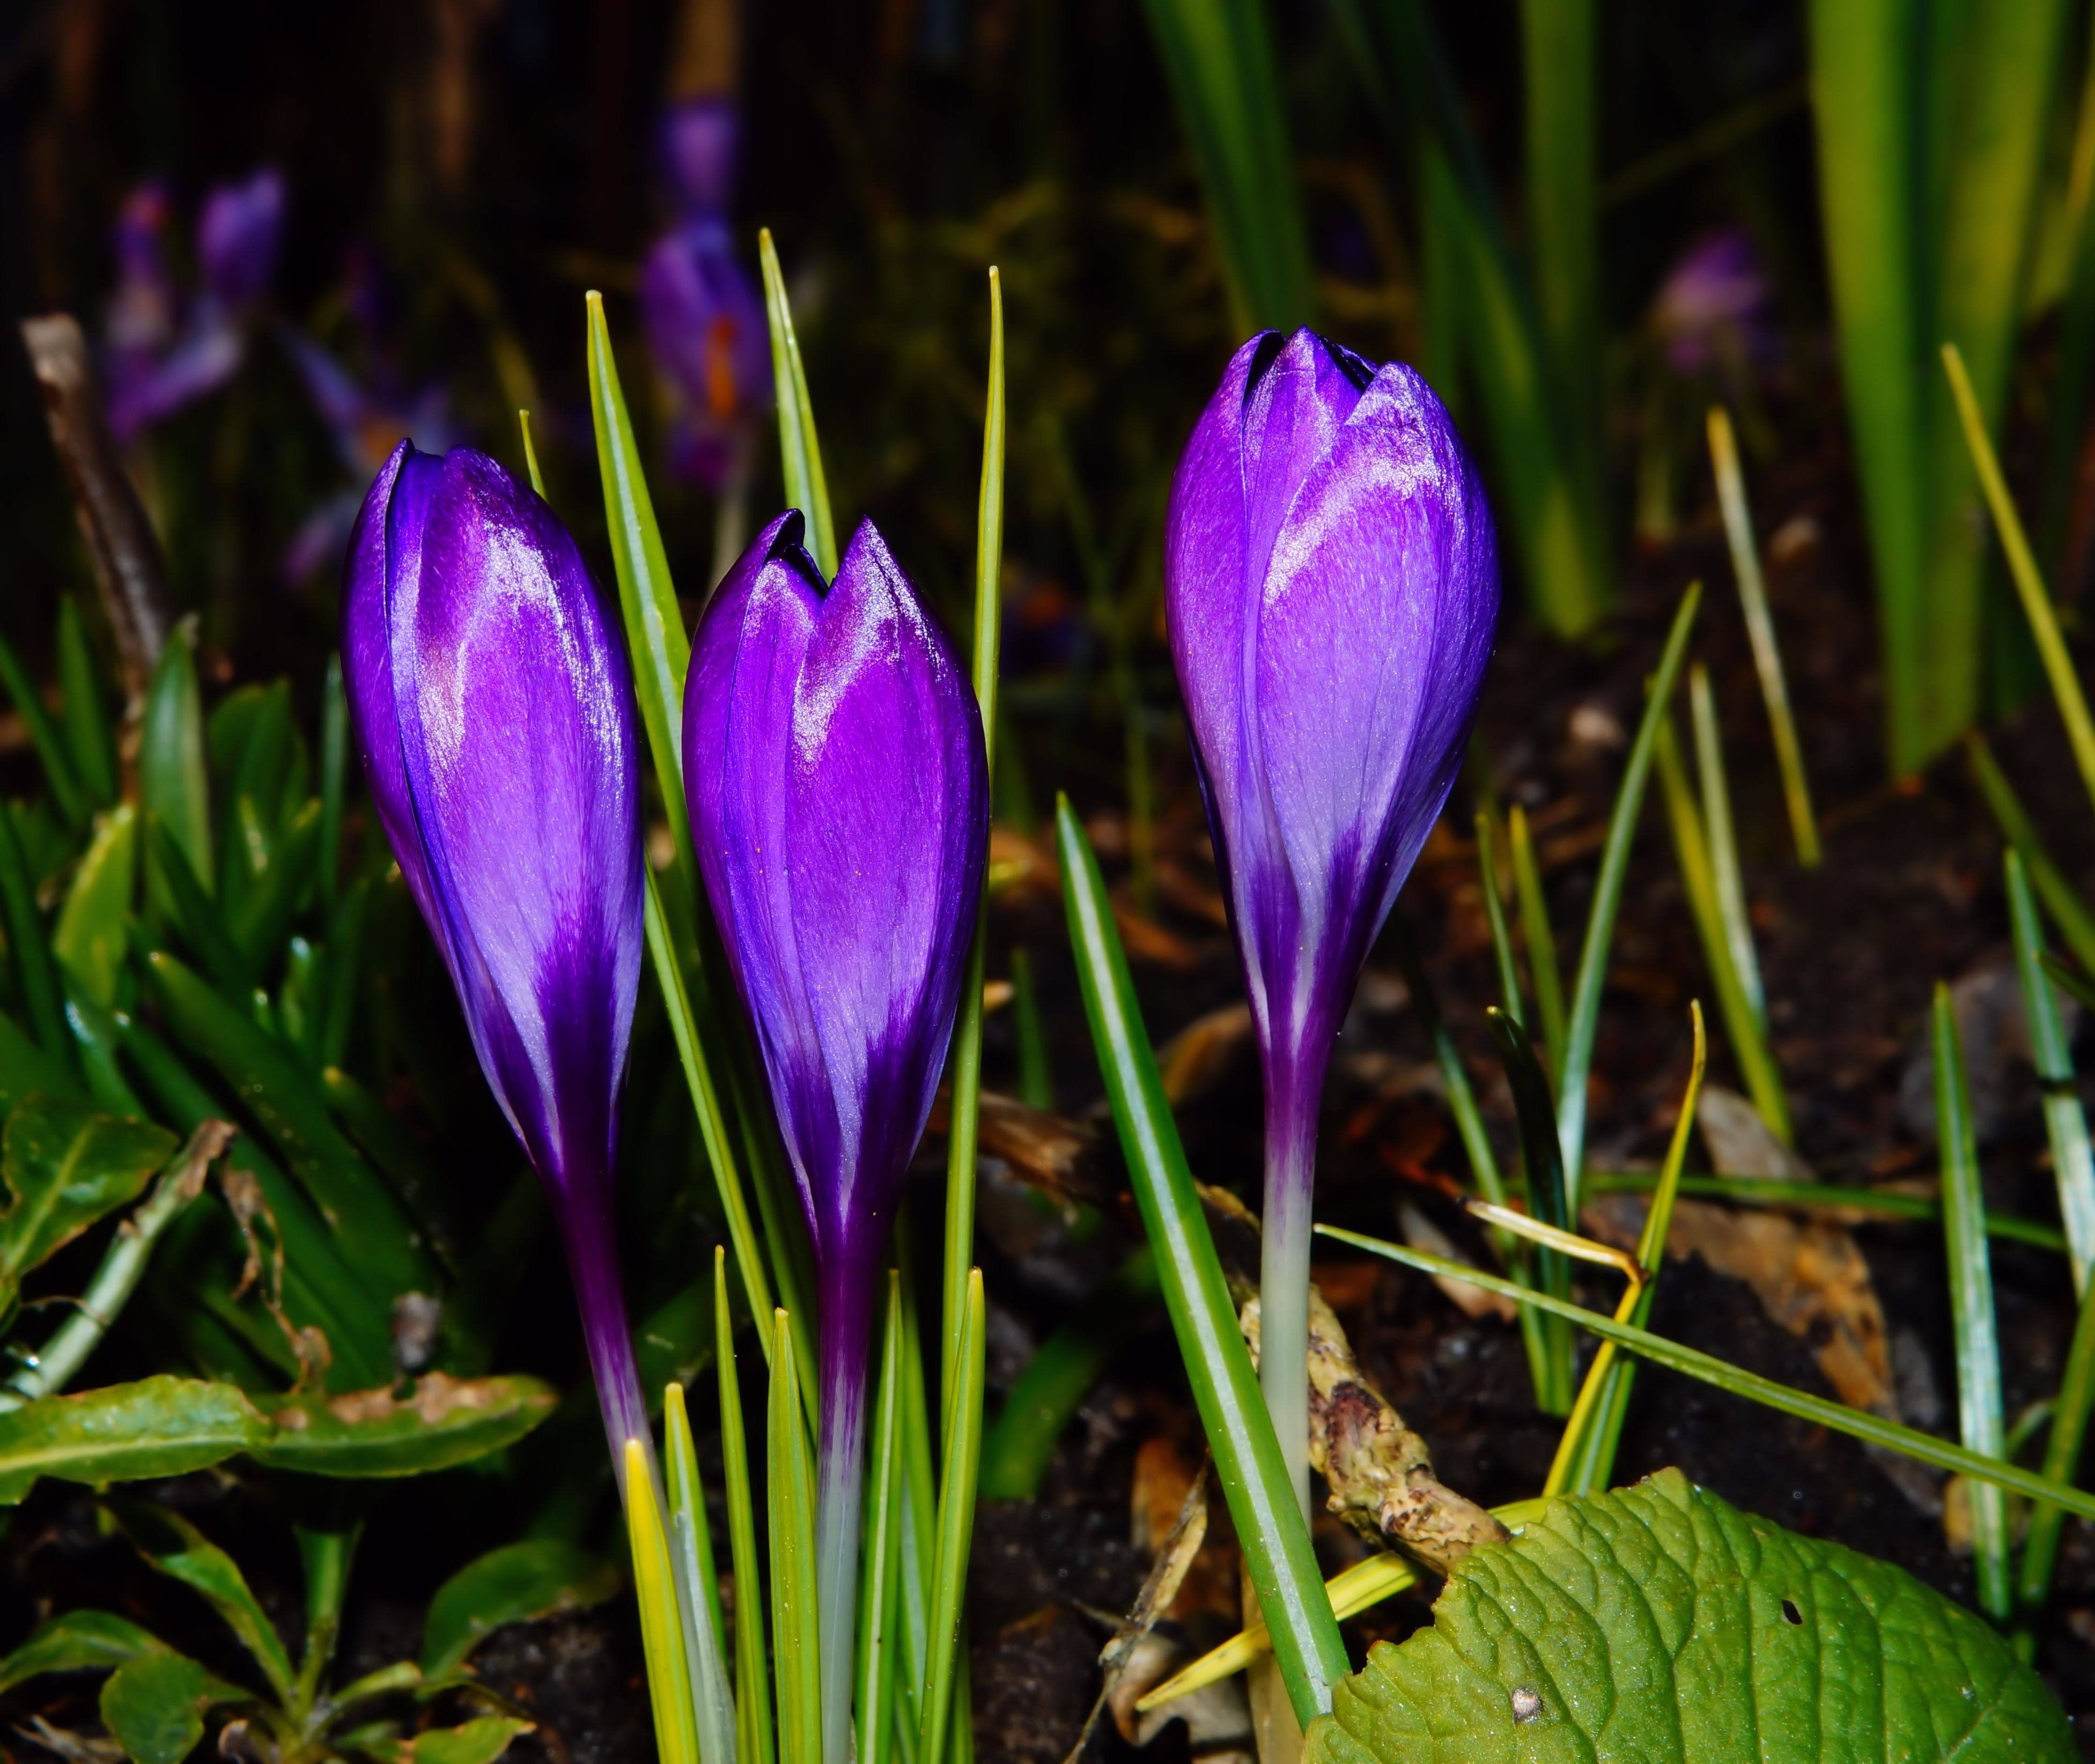 3 purple flower